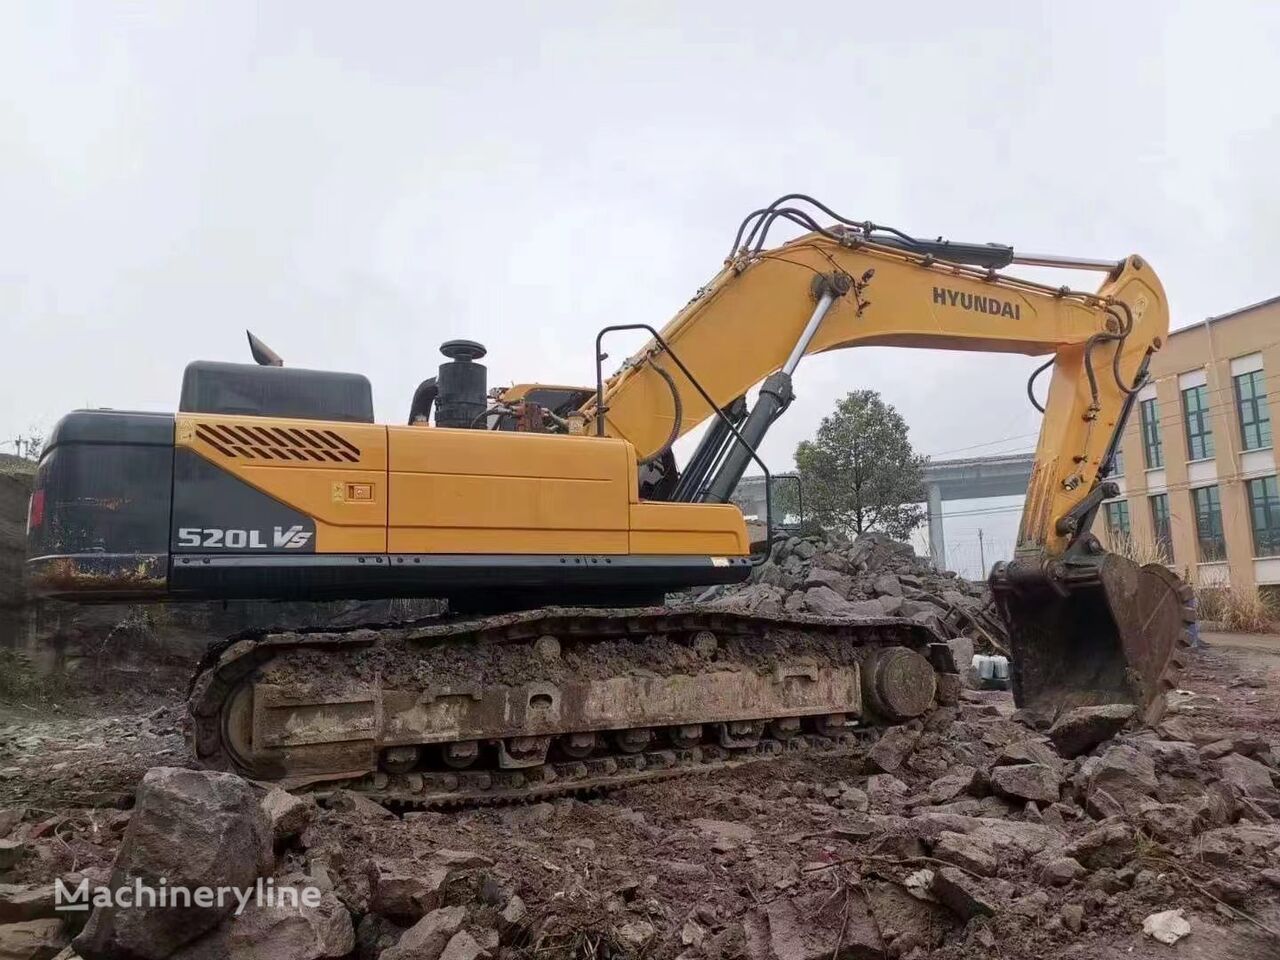 Hyundai 520 tracked excavator